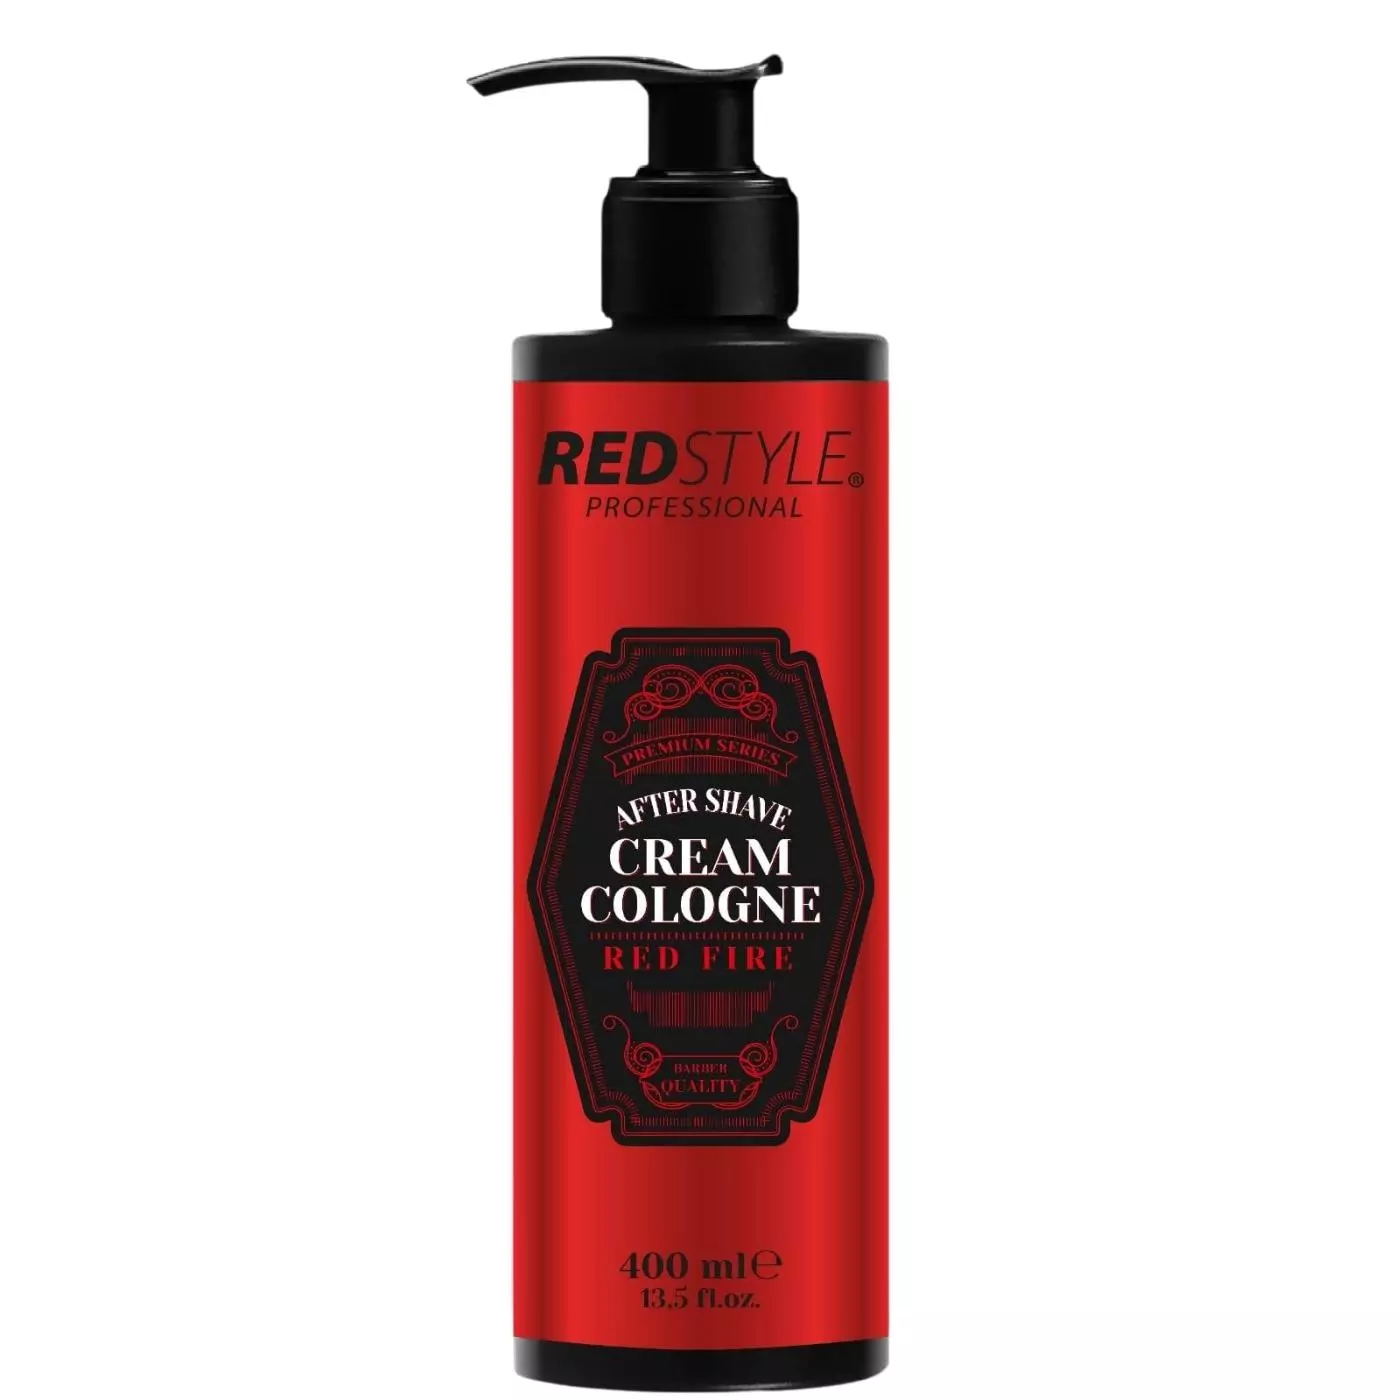 Redstyle Professional After Shave Cream Cologne - Balsam nach der Rasur, kühlt und  pflegt   red fire